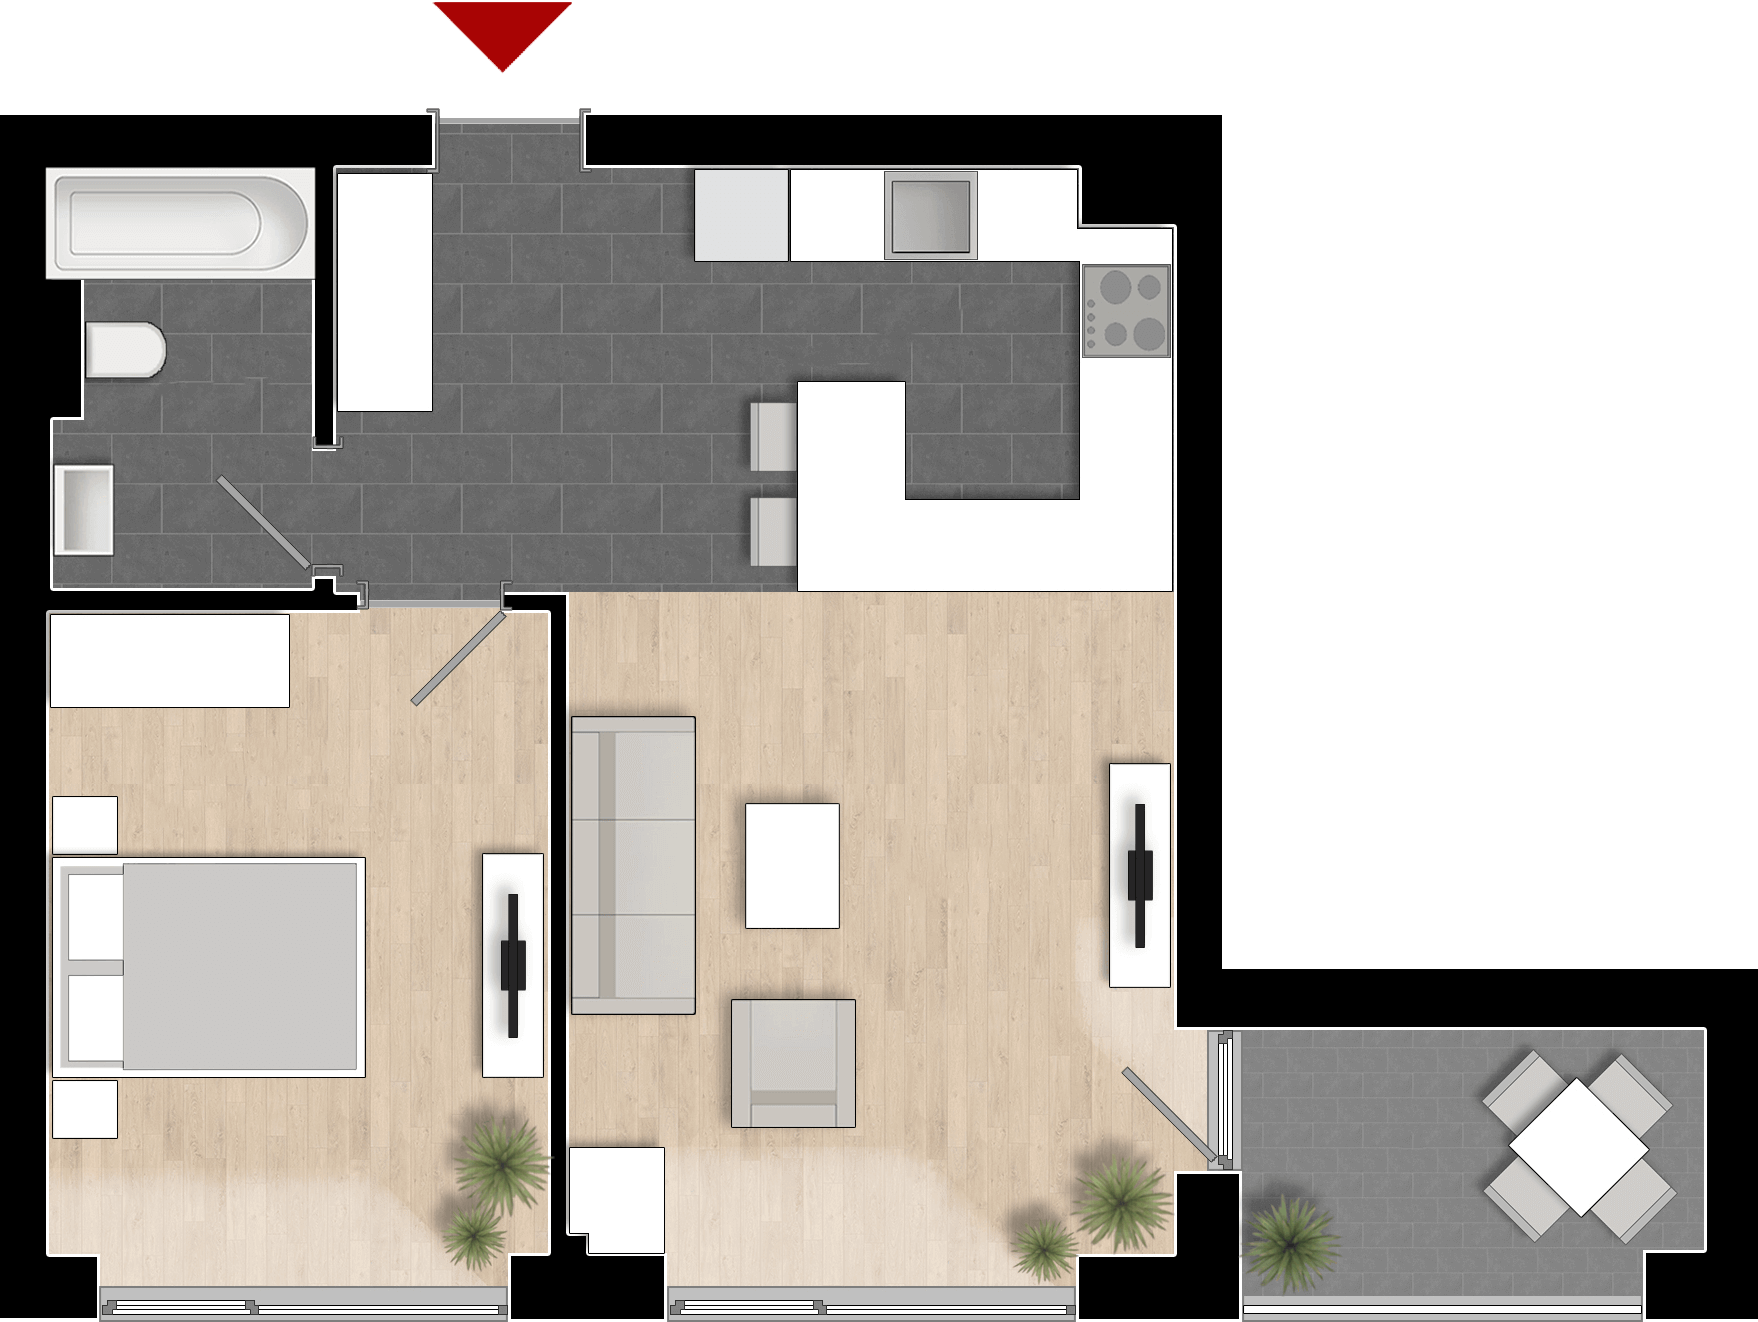  Apartament 901, Tip de apartament 1A cu 2 camere 